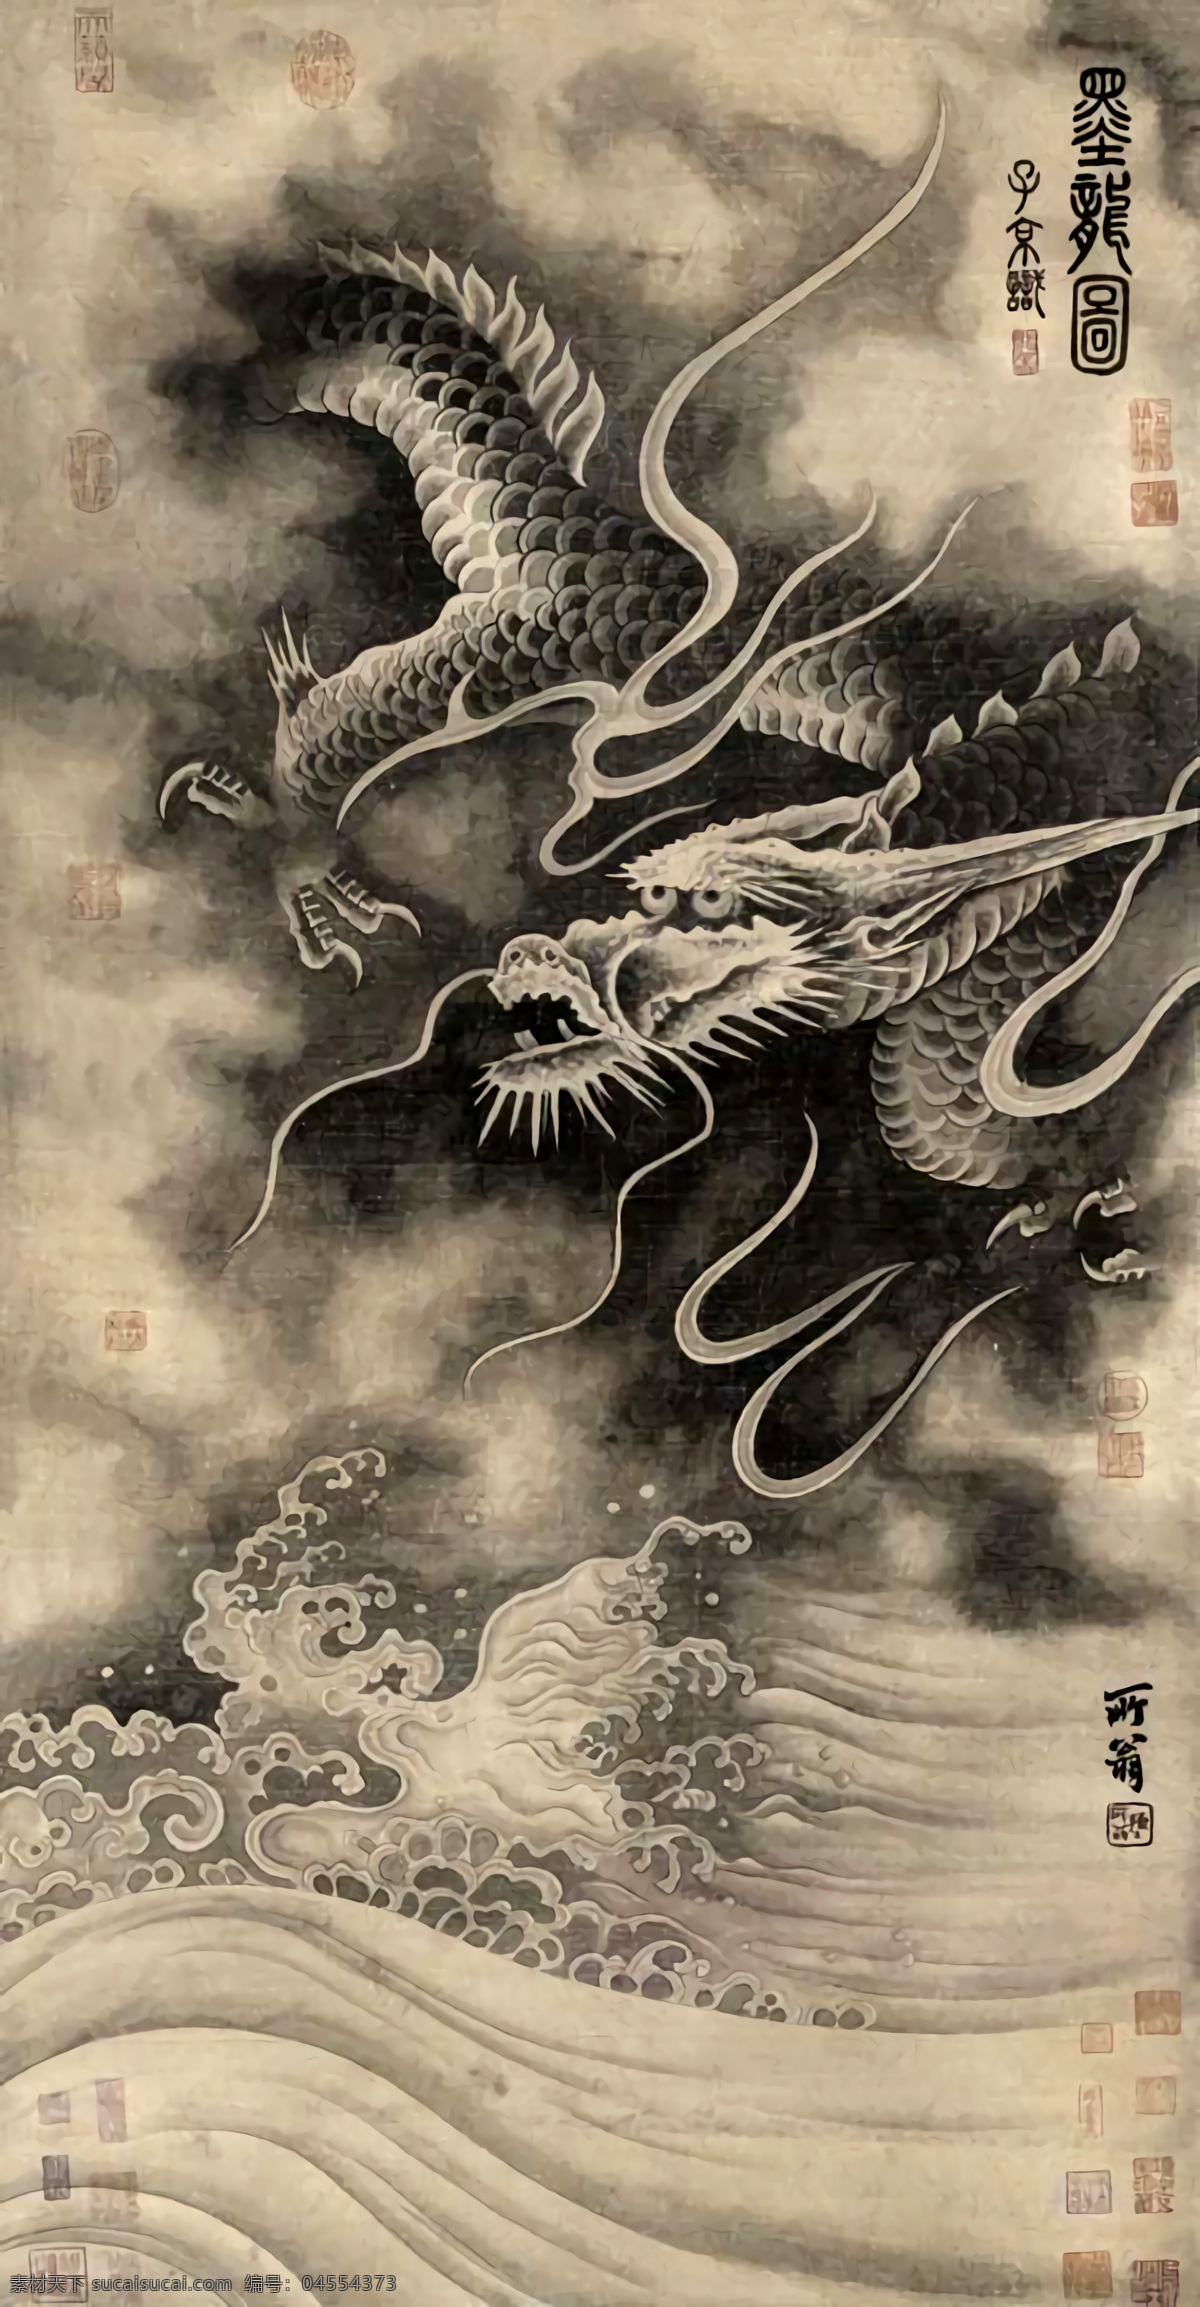 水墨龙 龙 中国 传统 水墨 国画 中国龙 传统龙 国画龙 文化艺术 传统文化